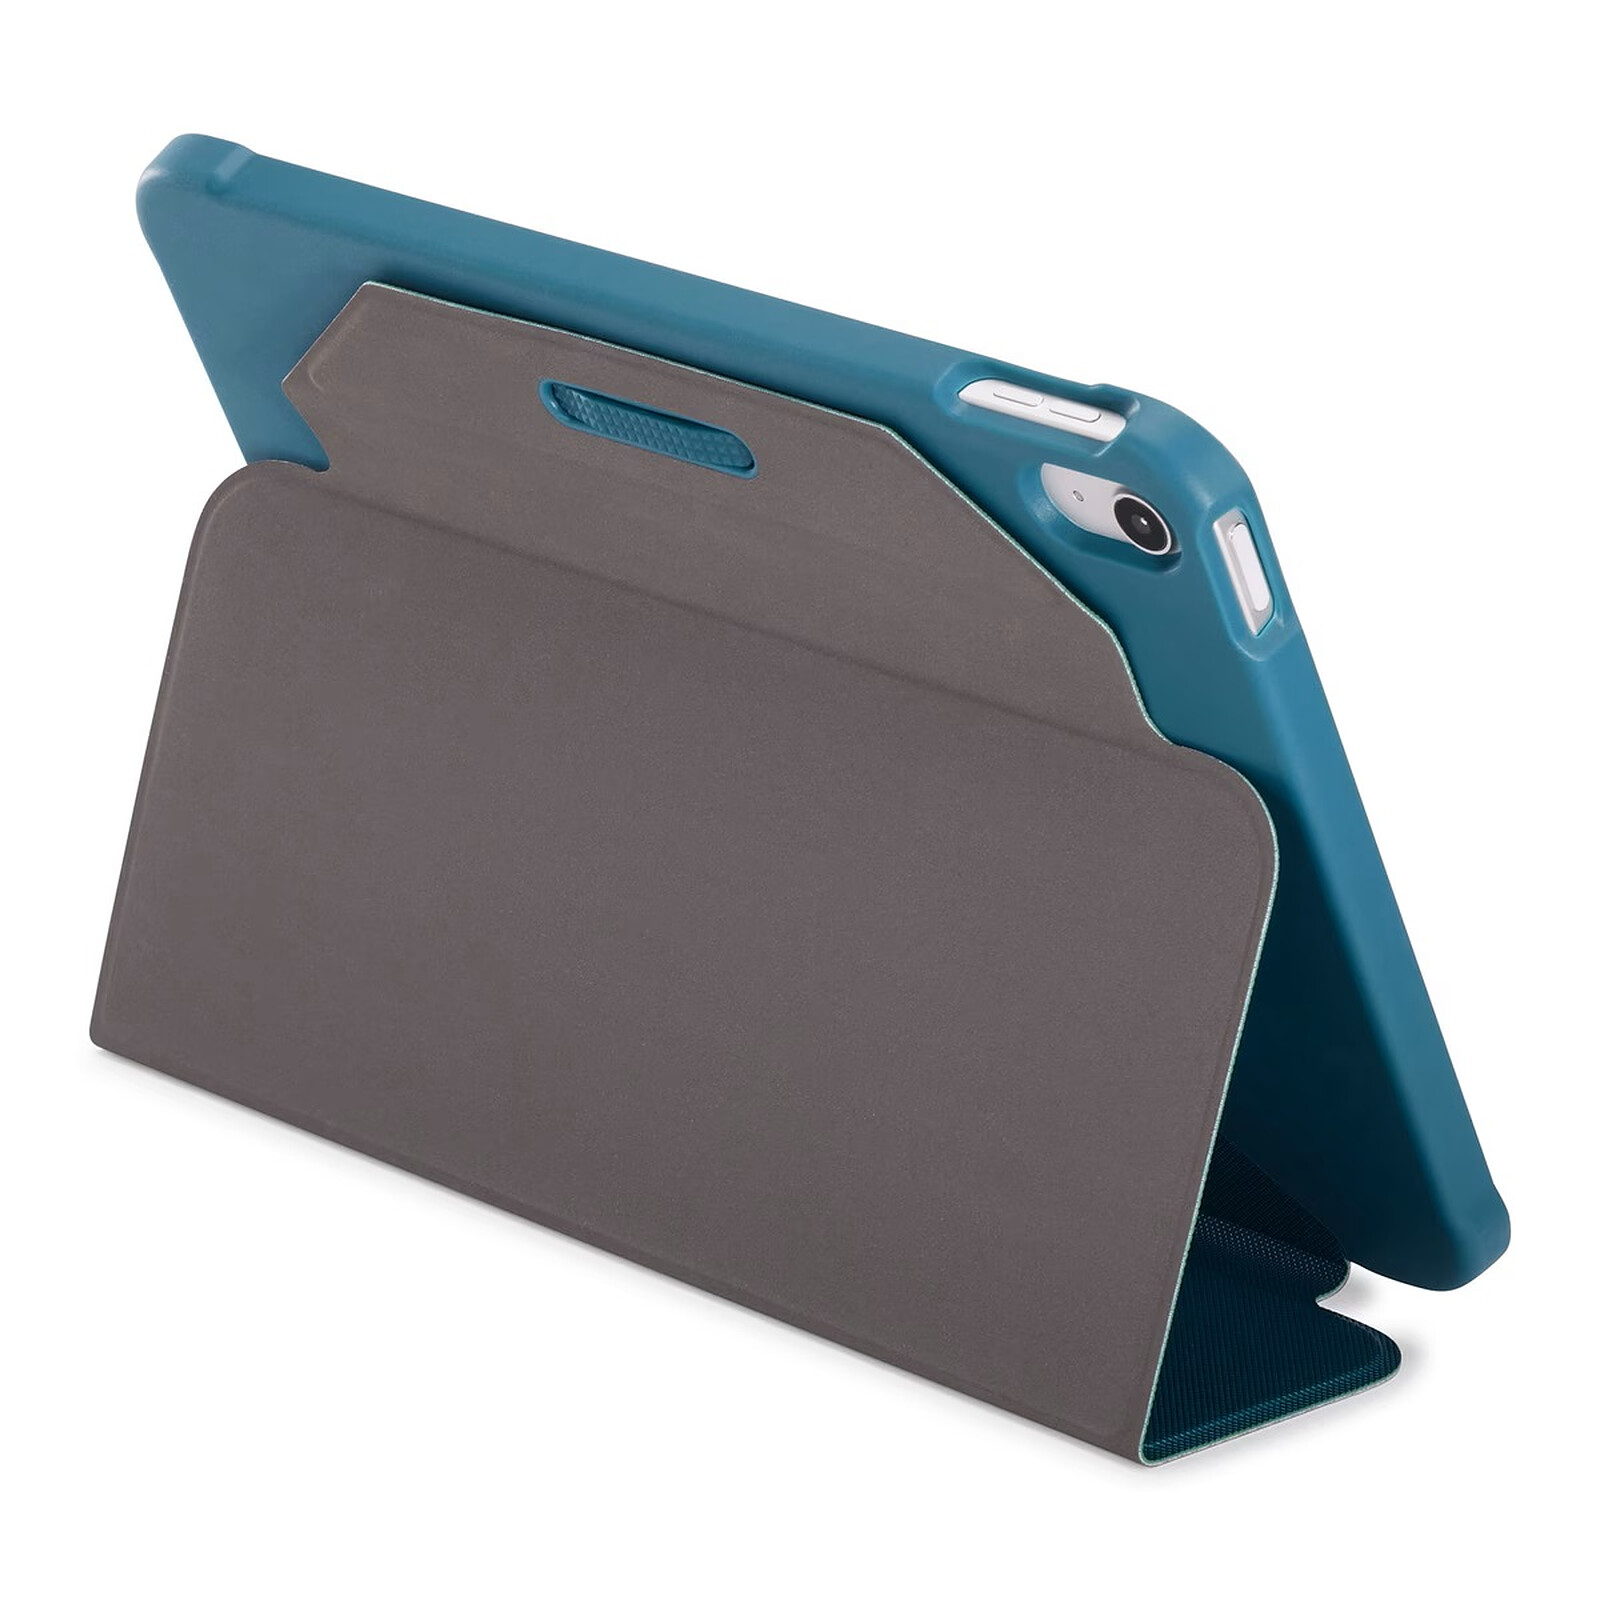 QDOS Etui Folio Muse pour iPad Air 10.9 - Transparent Bleu - Etui tablette  - Garantie 3 ans LDLC